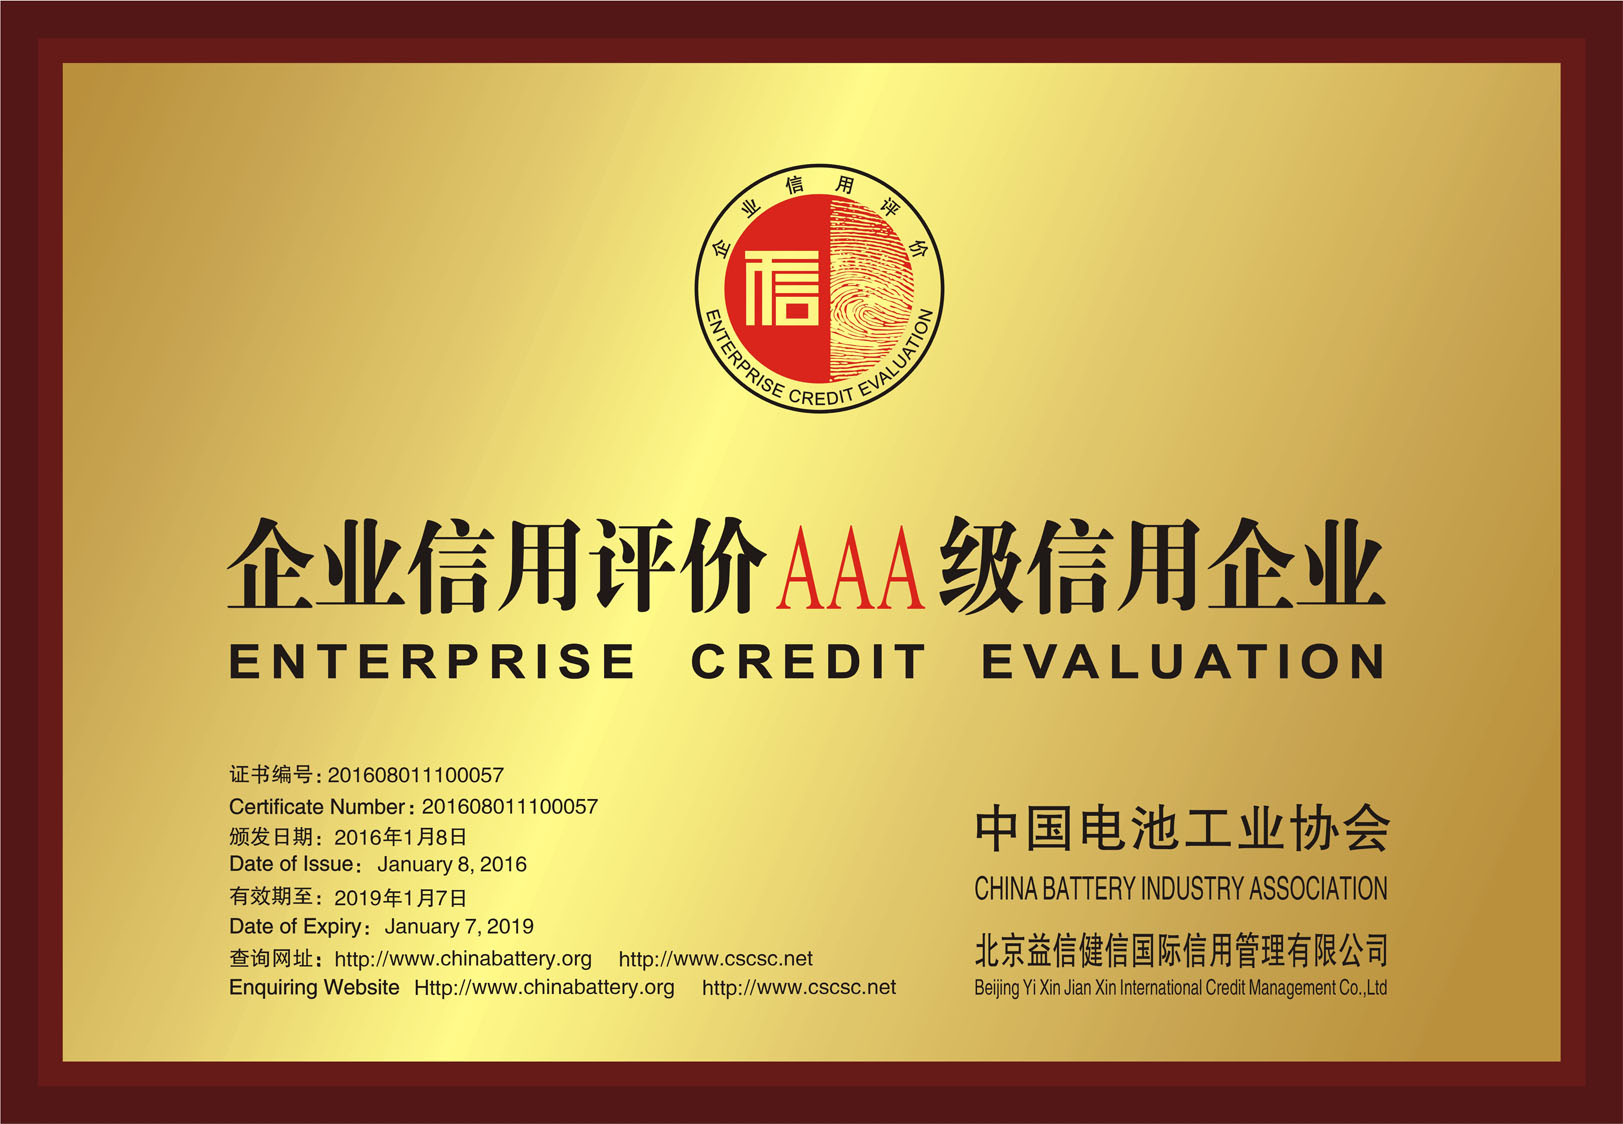 企业信用评价AAA级(中国电池 工业协会)